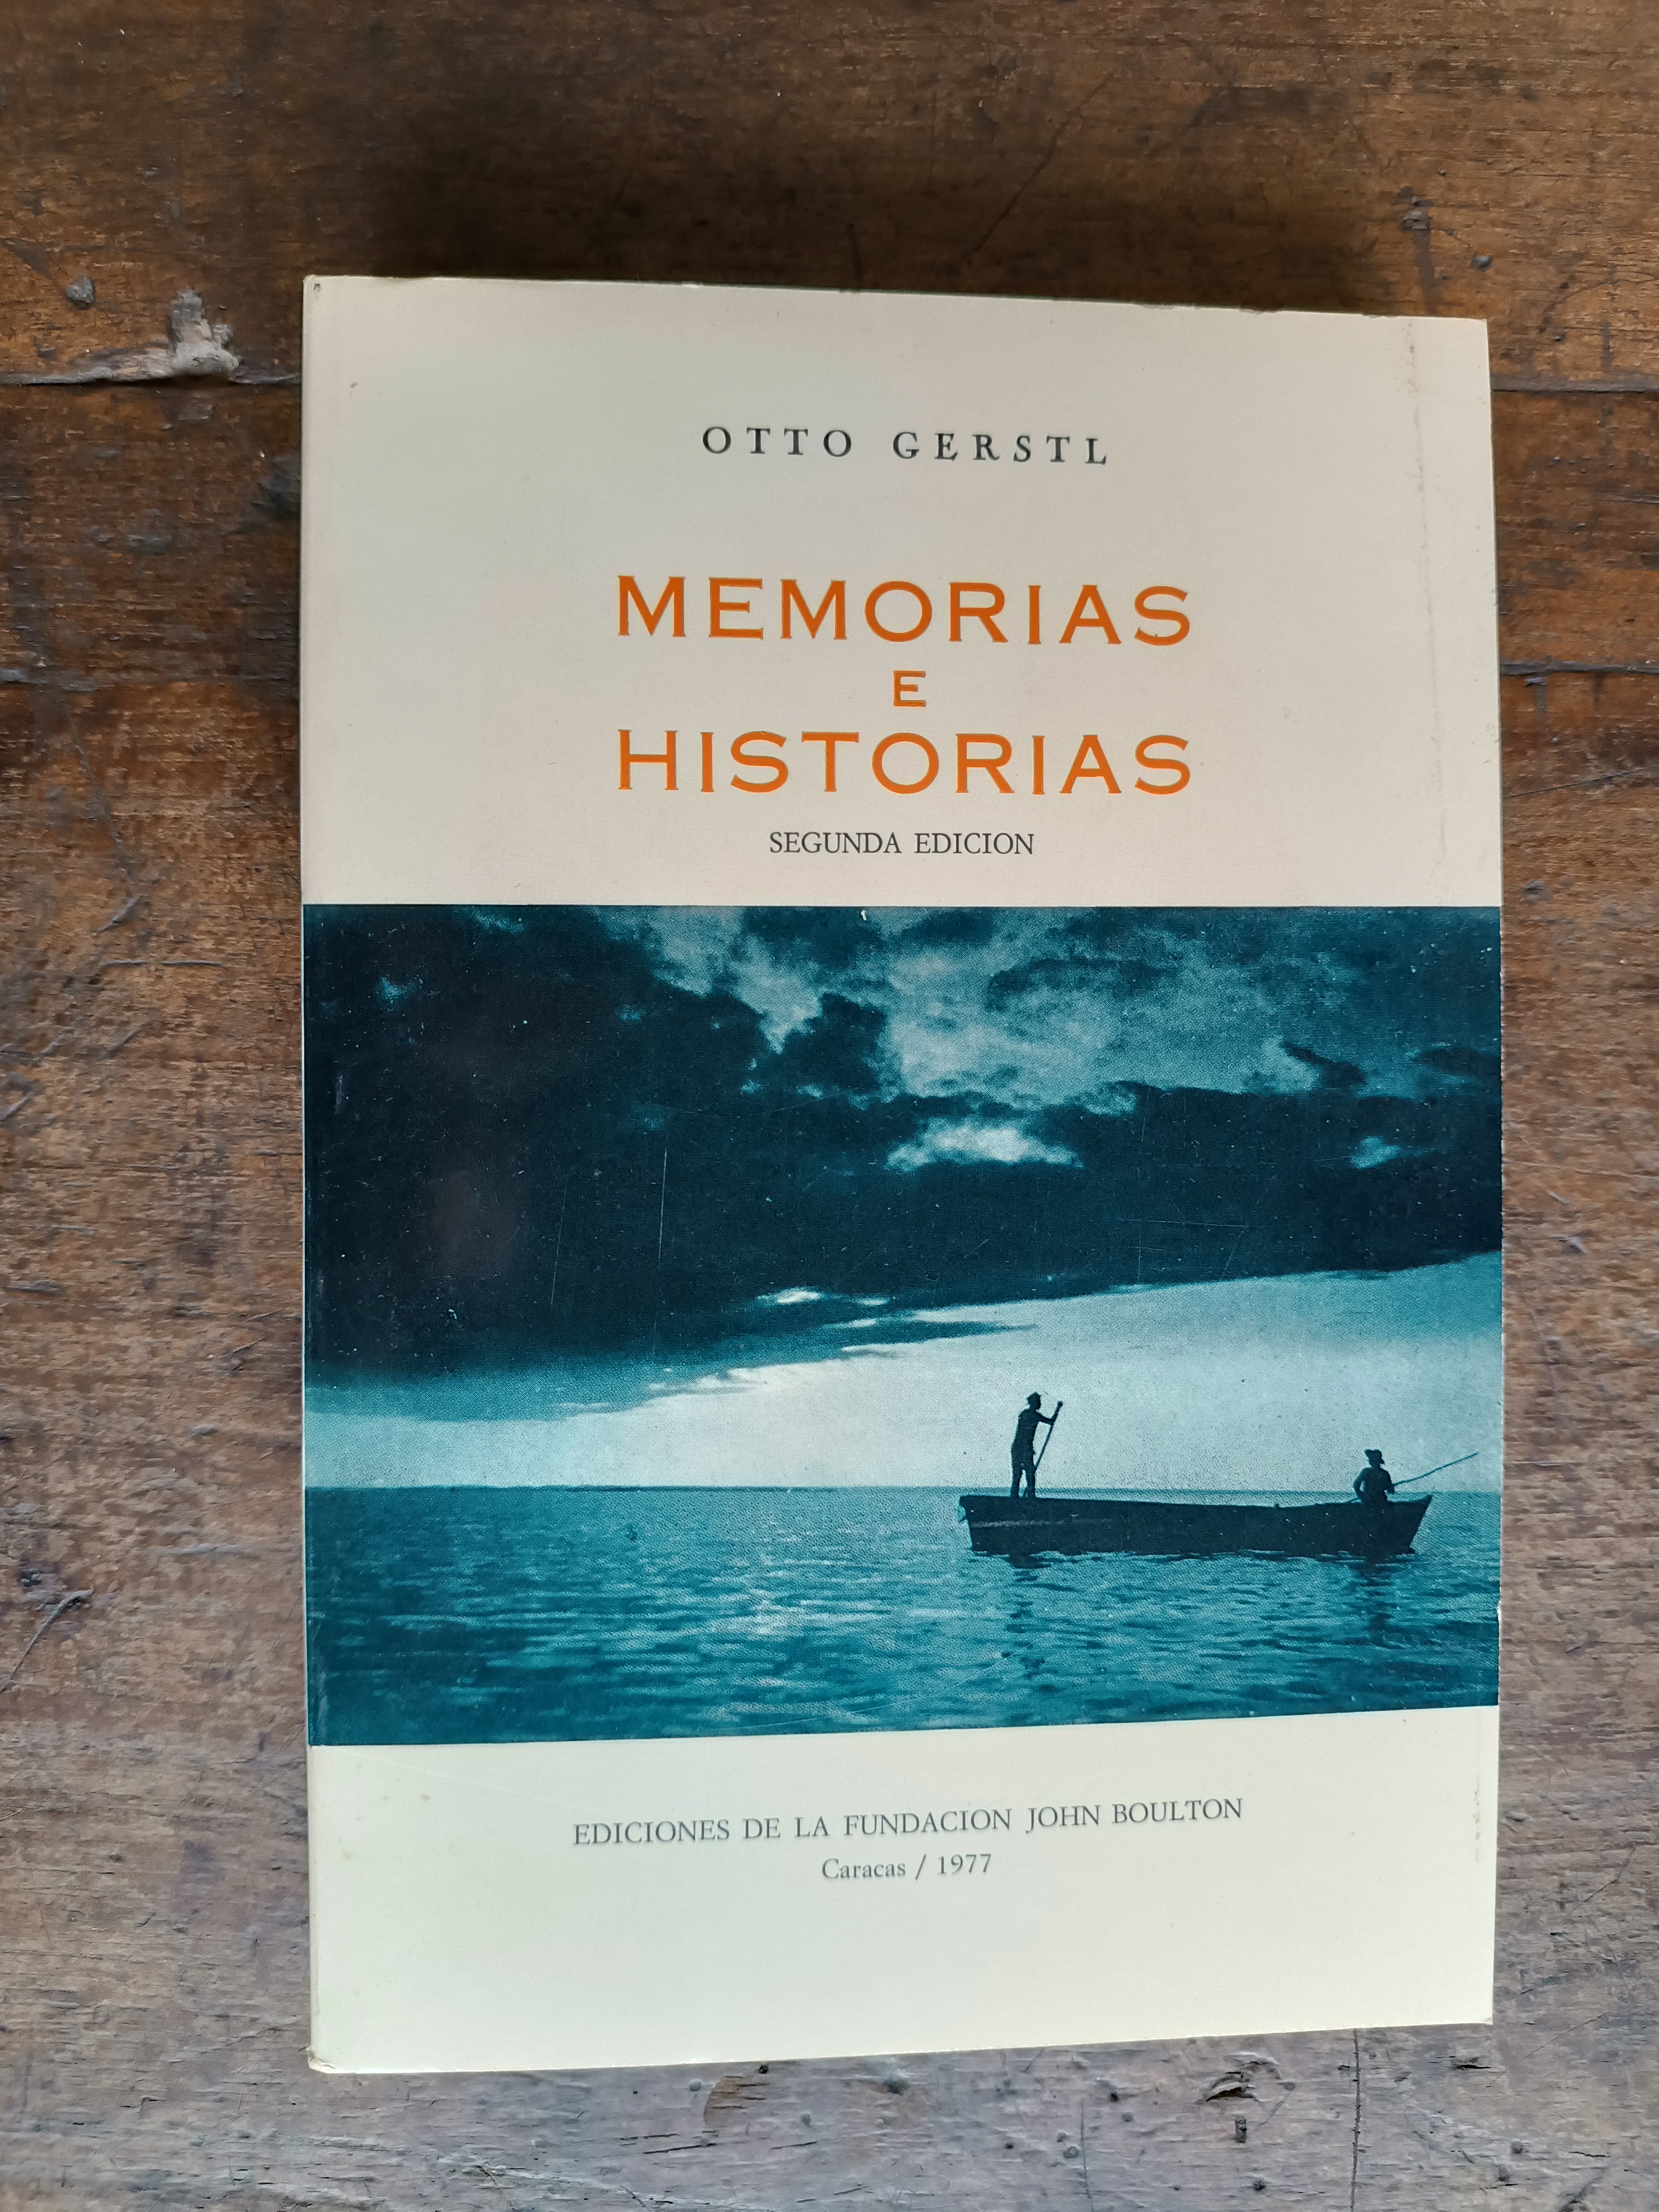 Otto Gerstl: Memorias e Historias 